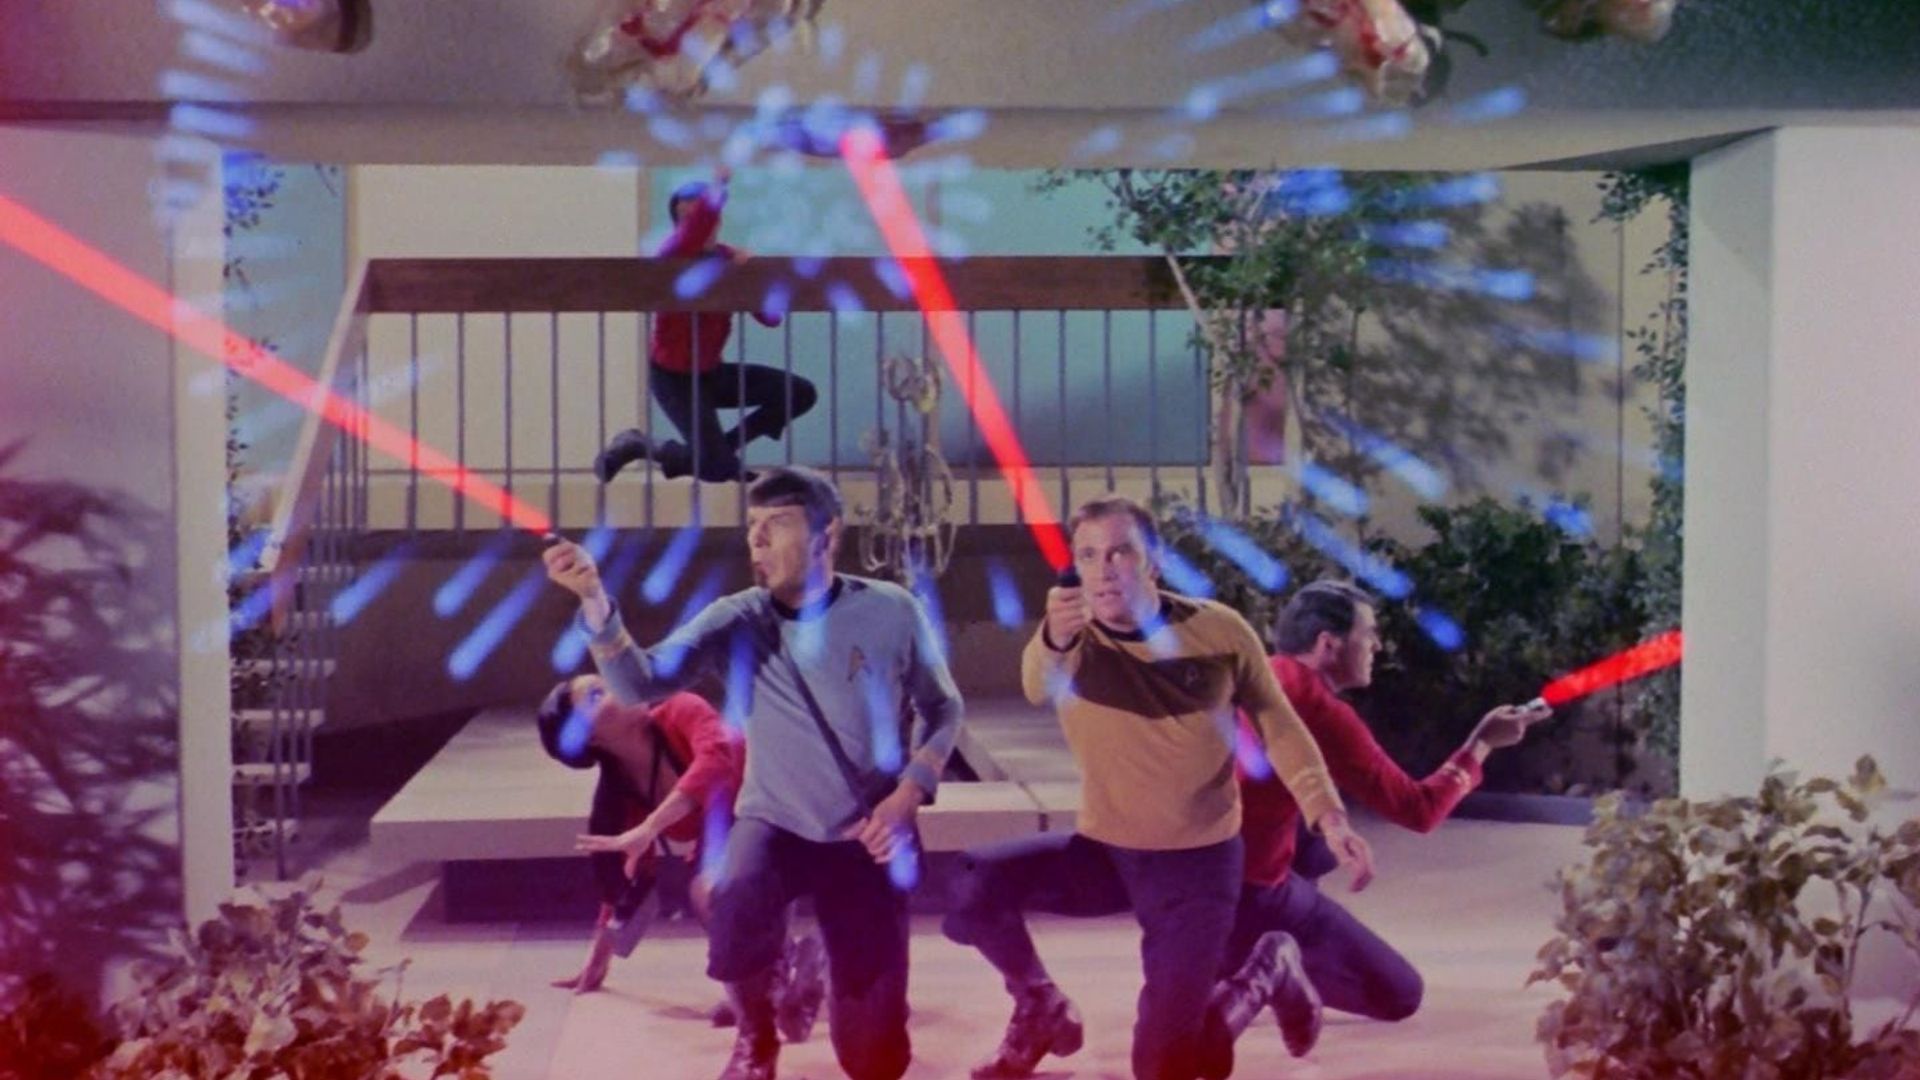 Star Trek background